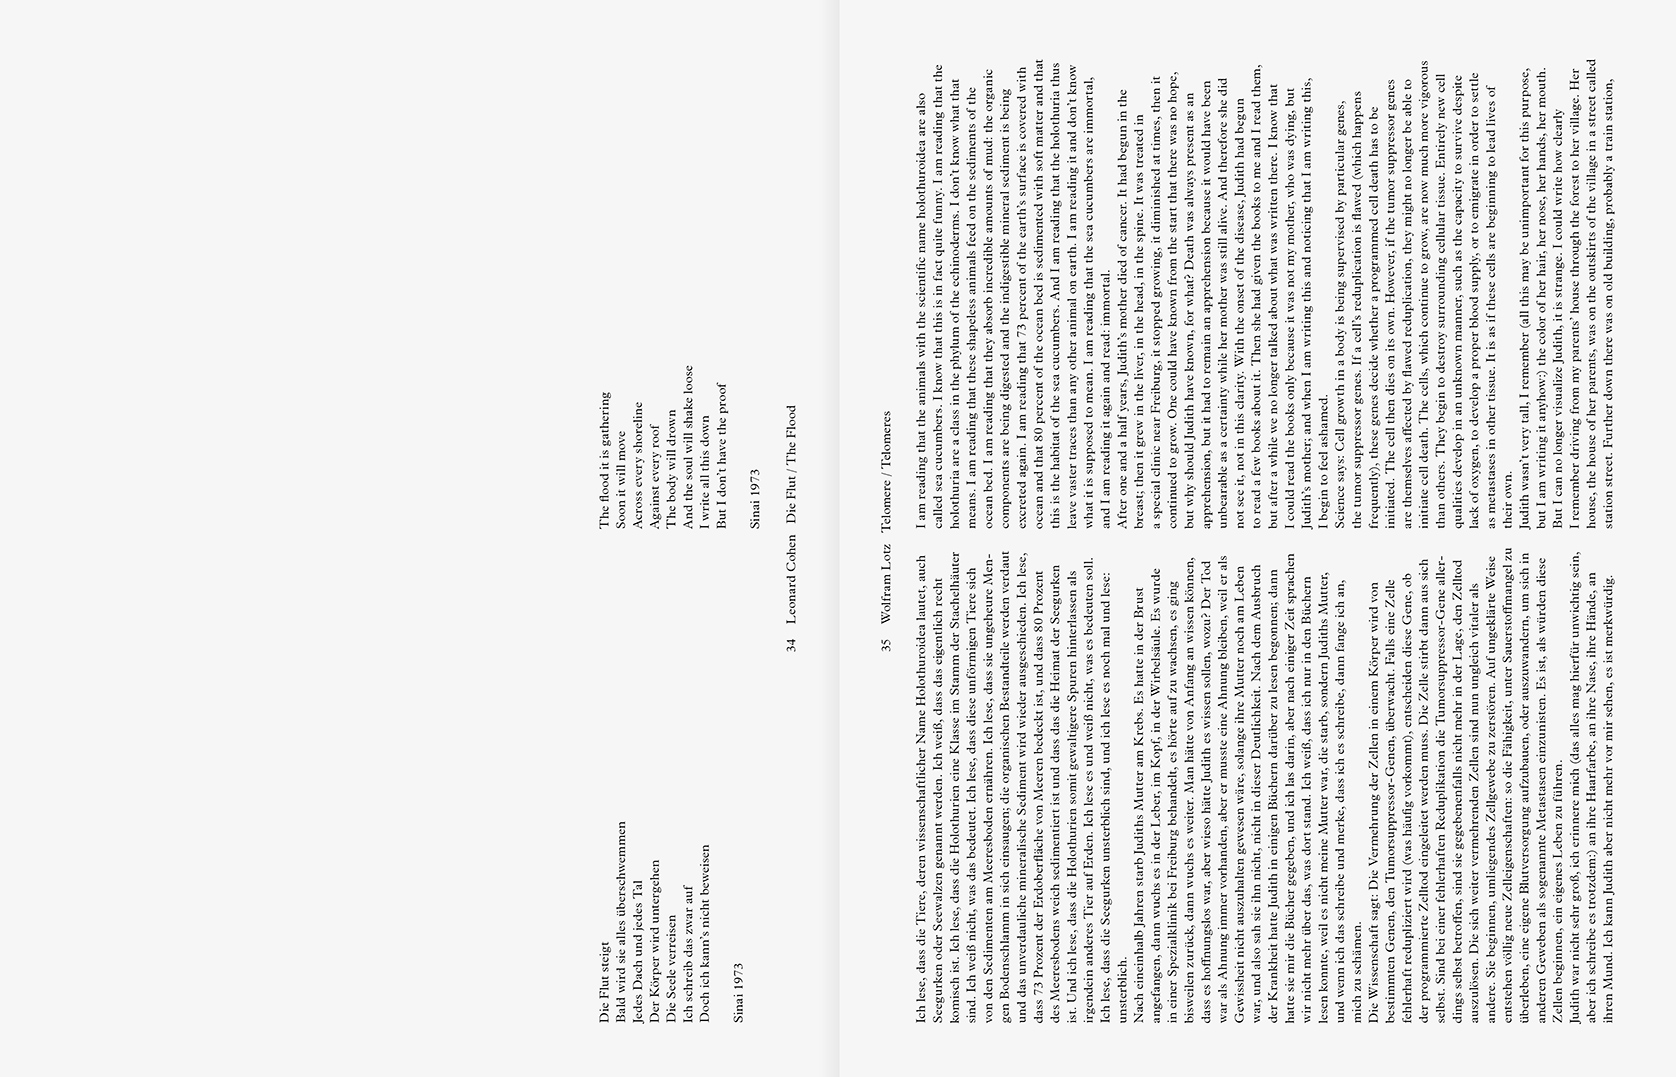 julia marquardt ein magazin ueber orte buecher & hefte verlag gestaltung magazin magazine graphic design konzept concept herausgeber publisher